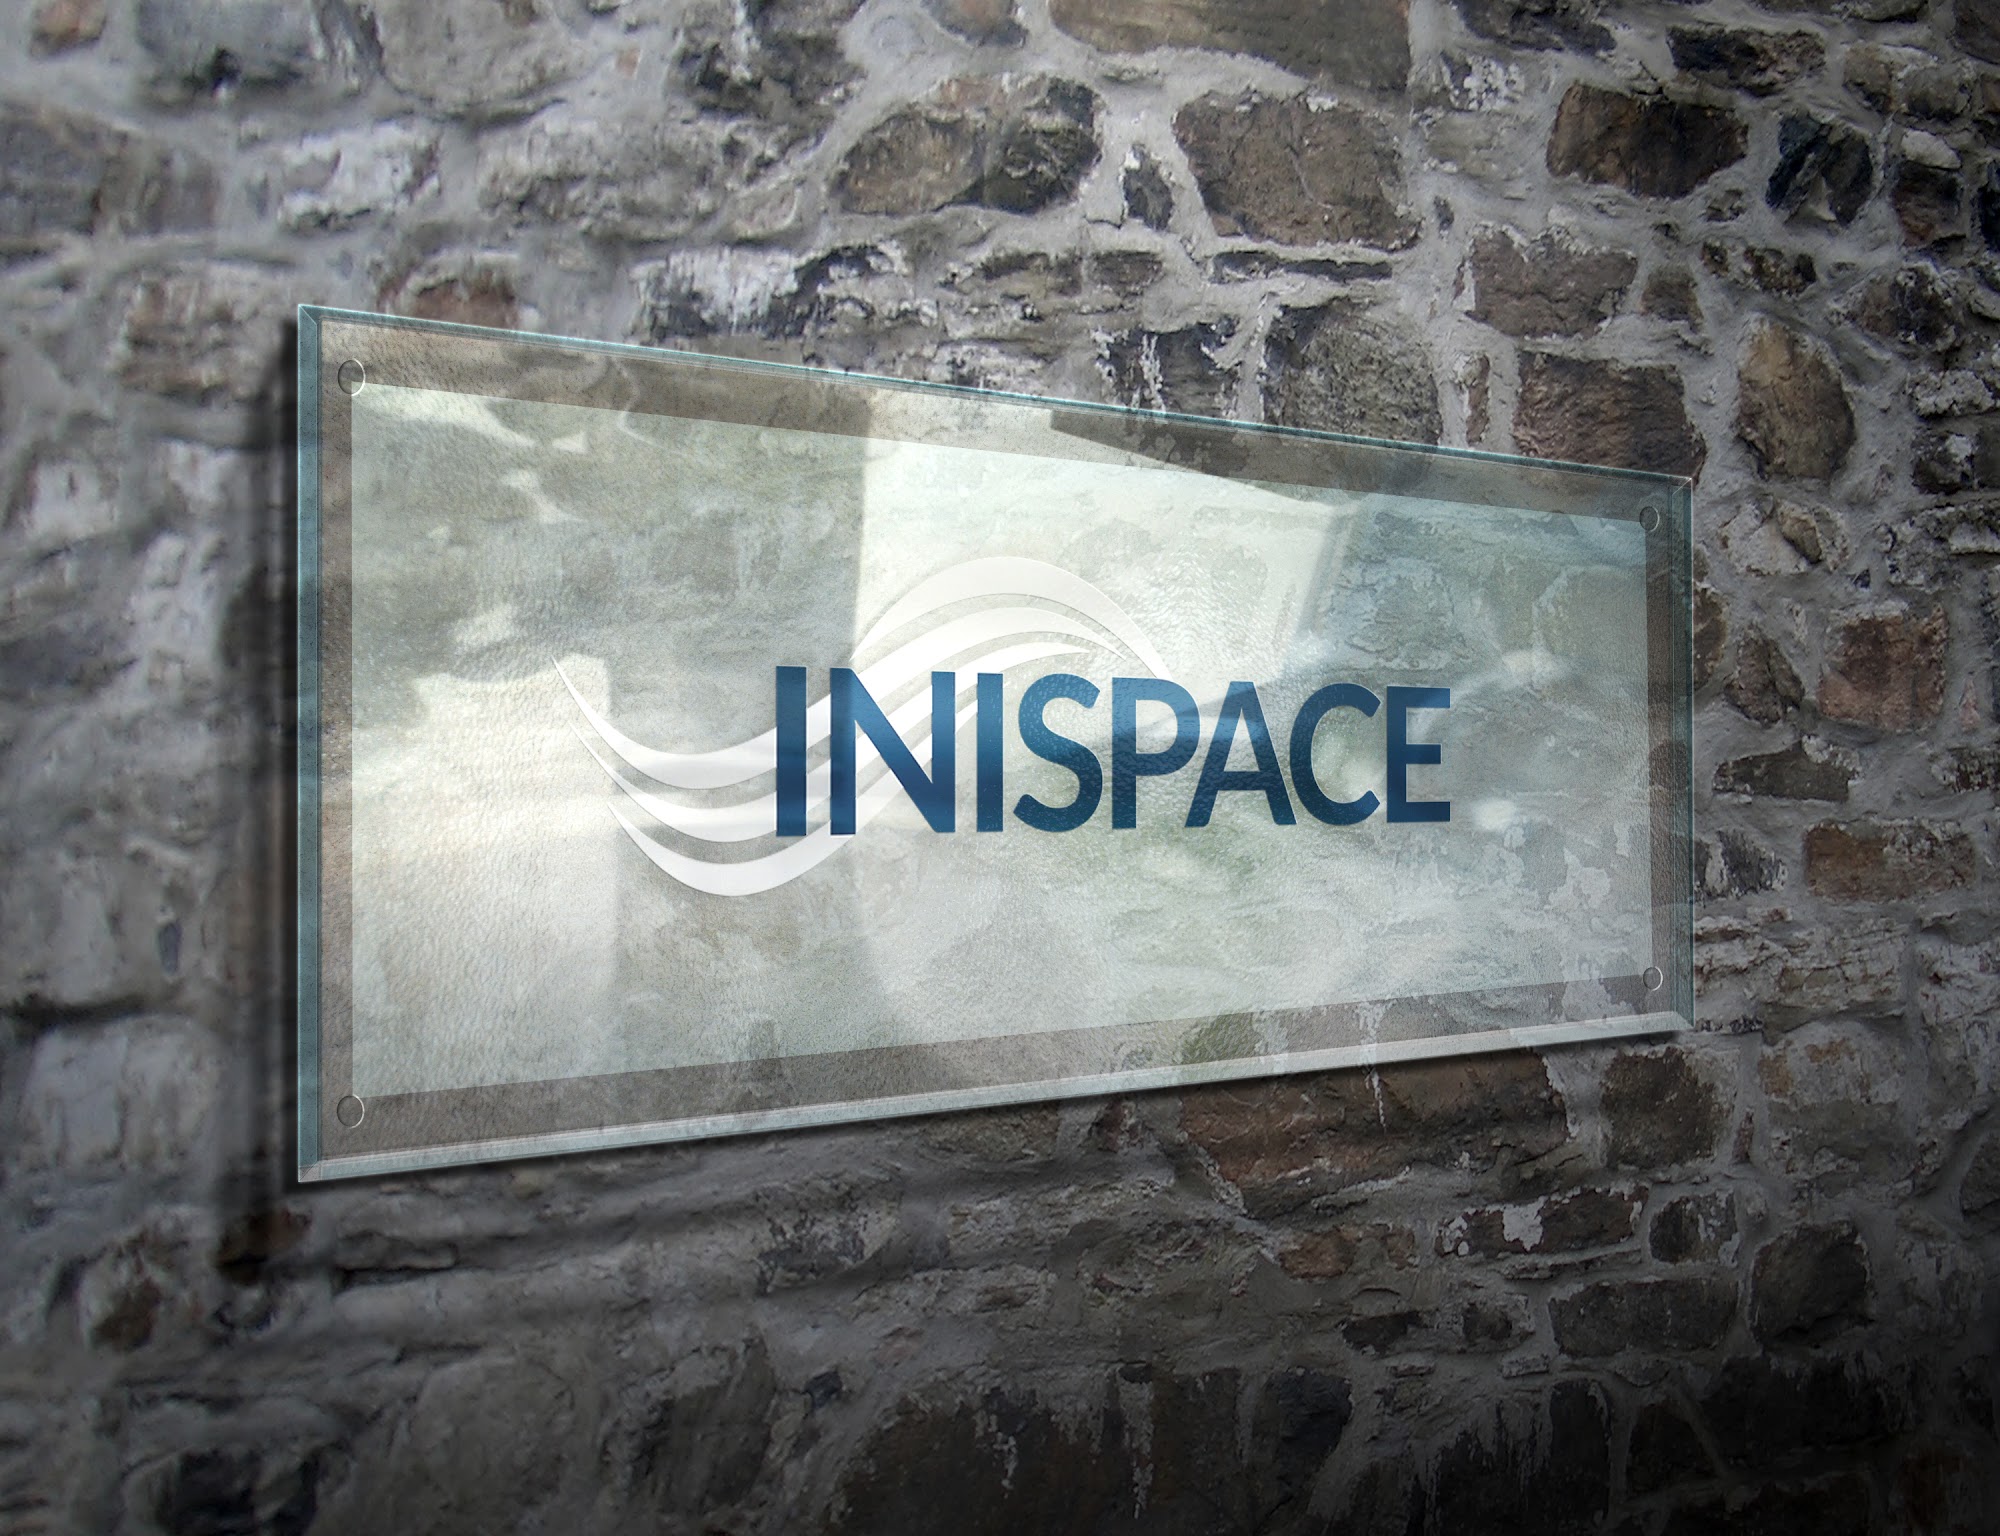 INISPACE, LLC